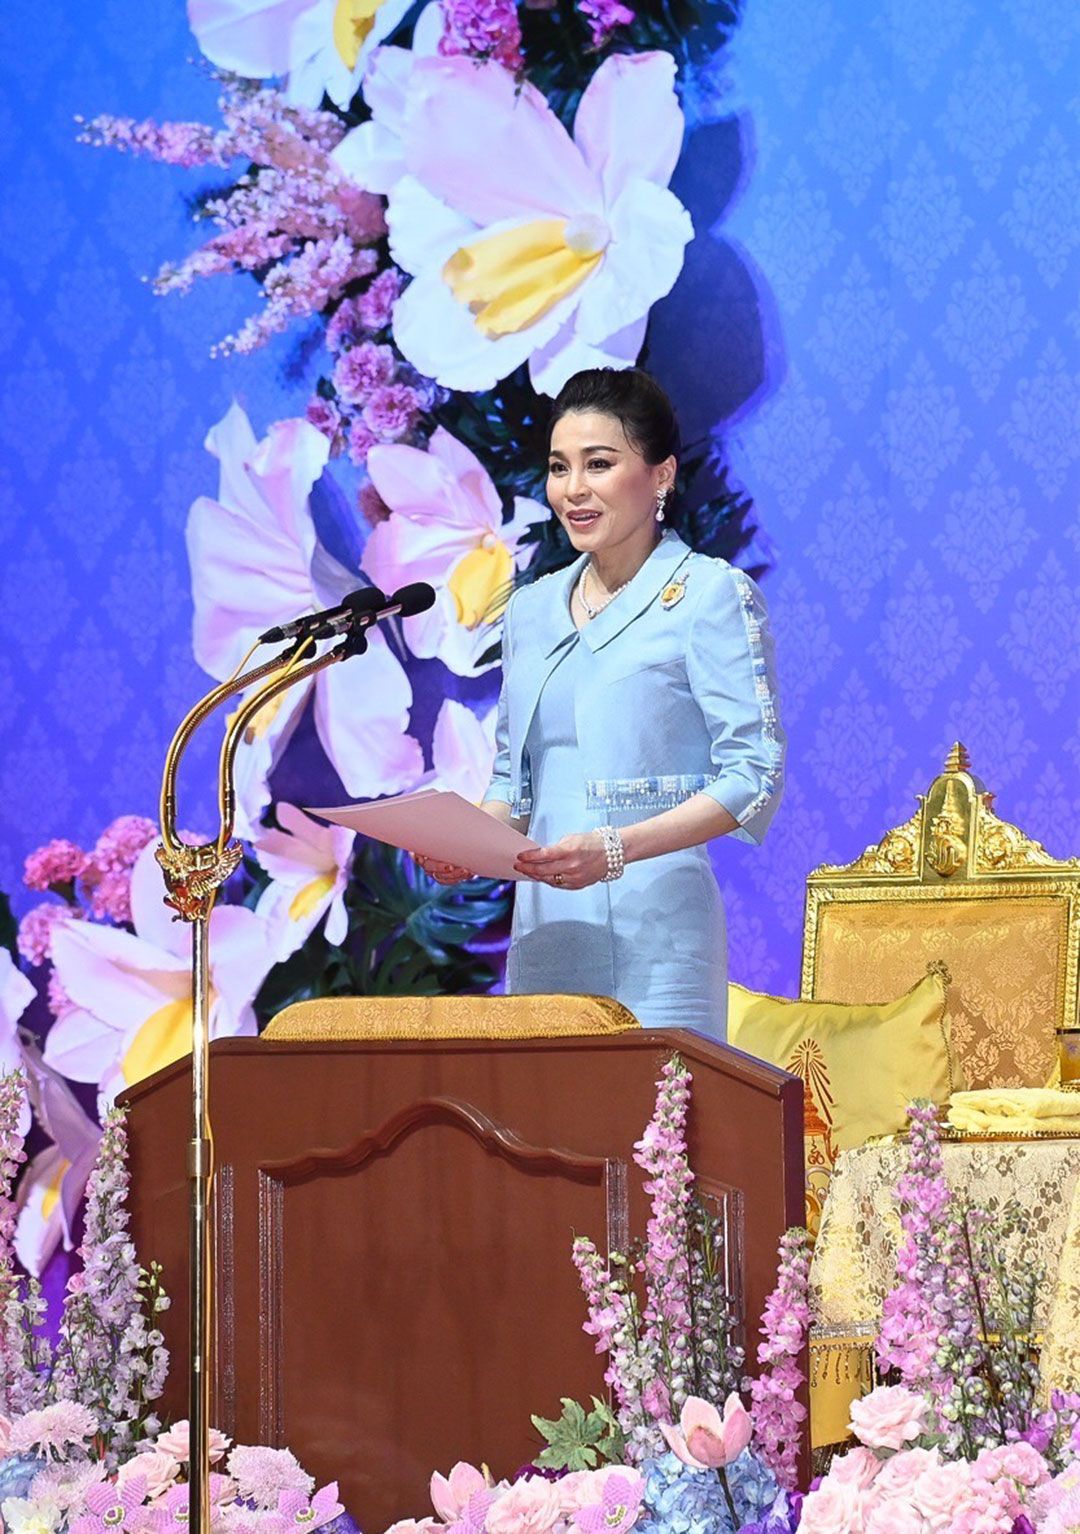 สมเด็จพระนางเจ้าฯ พระบรมราชินี พระราชทานพระราชดำรัสทรงเปิดงาน “วันสตรีไทย ประจำปี 2565”